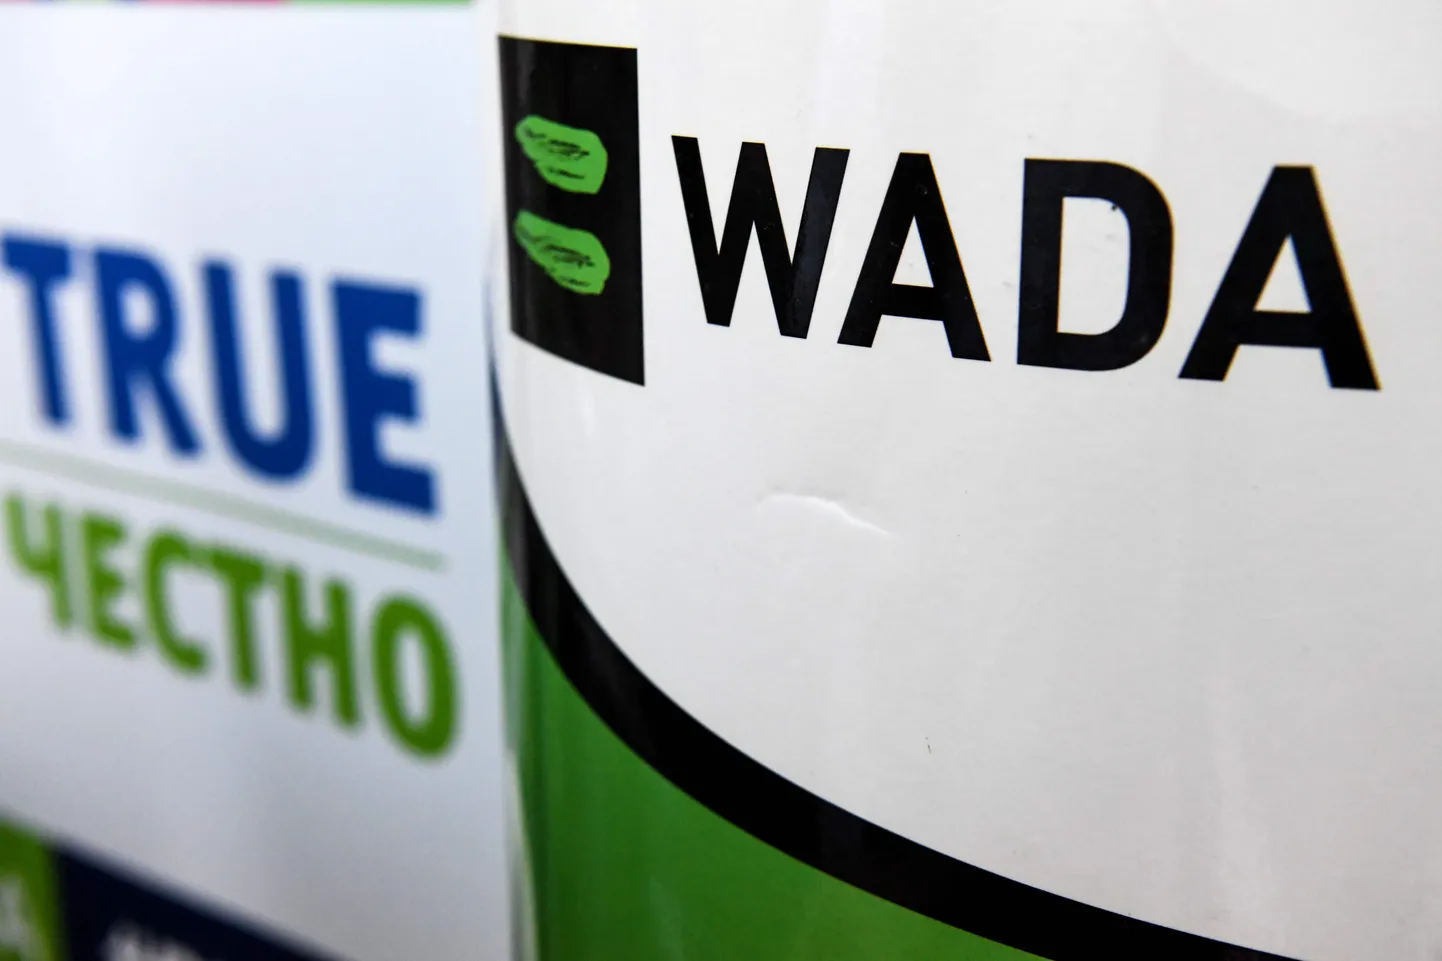 Eelmise aasta lõpuga sai RUSADA-le seatud keeld läbi, kuid WADA pole neid veel täieõiguslikuks liikmeks võtnud.